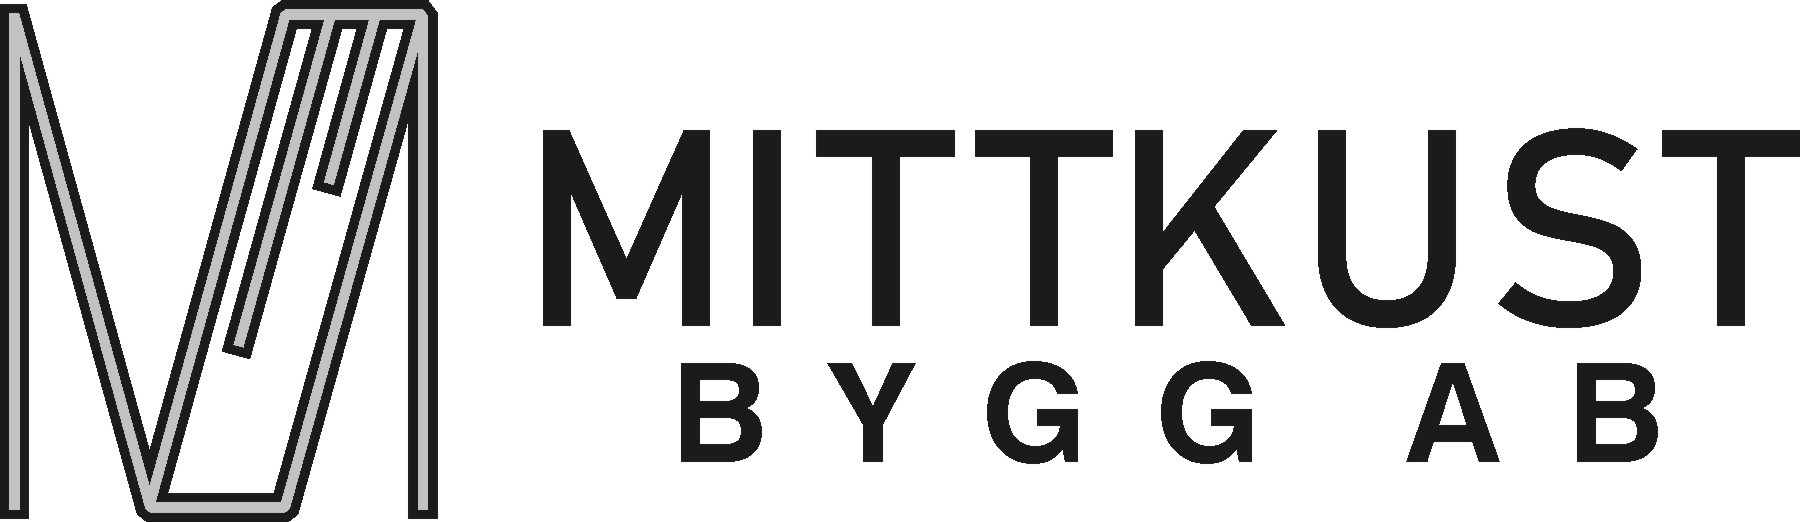 Mittkust Bygg AB Logo